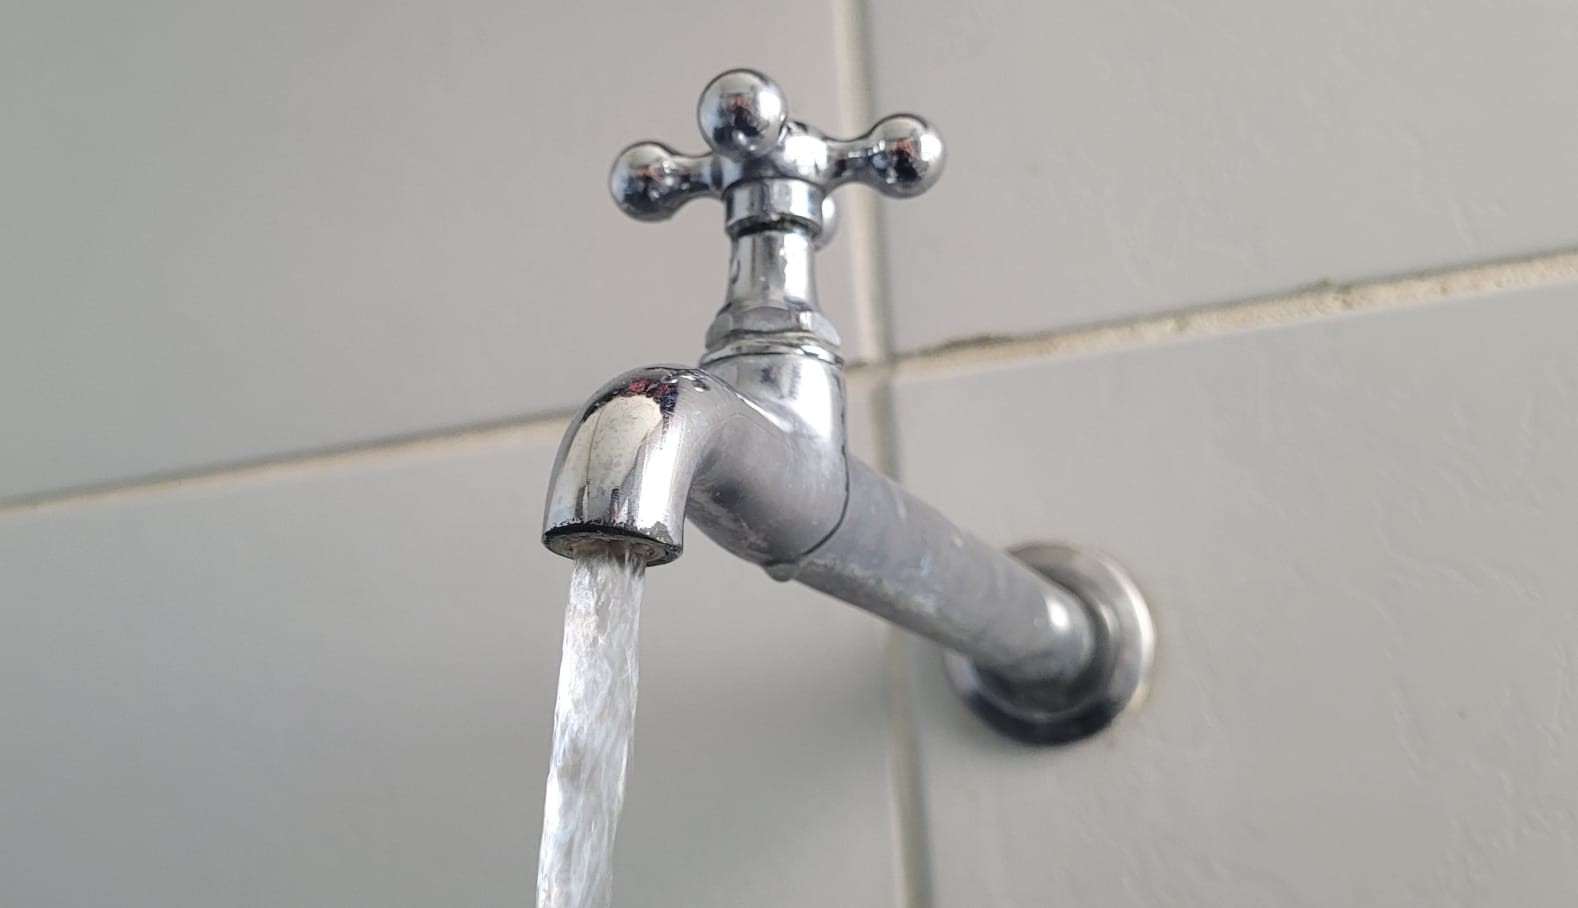 Rompimento de adutora afeta abastecimento de água em bairros de Curitiba nesta quinta (8); veja quais